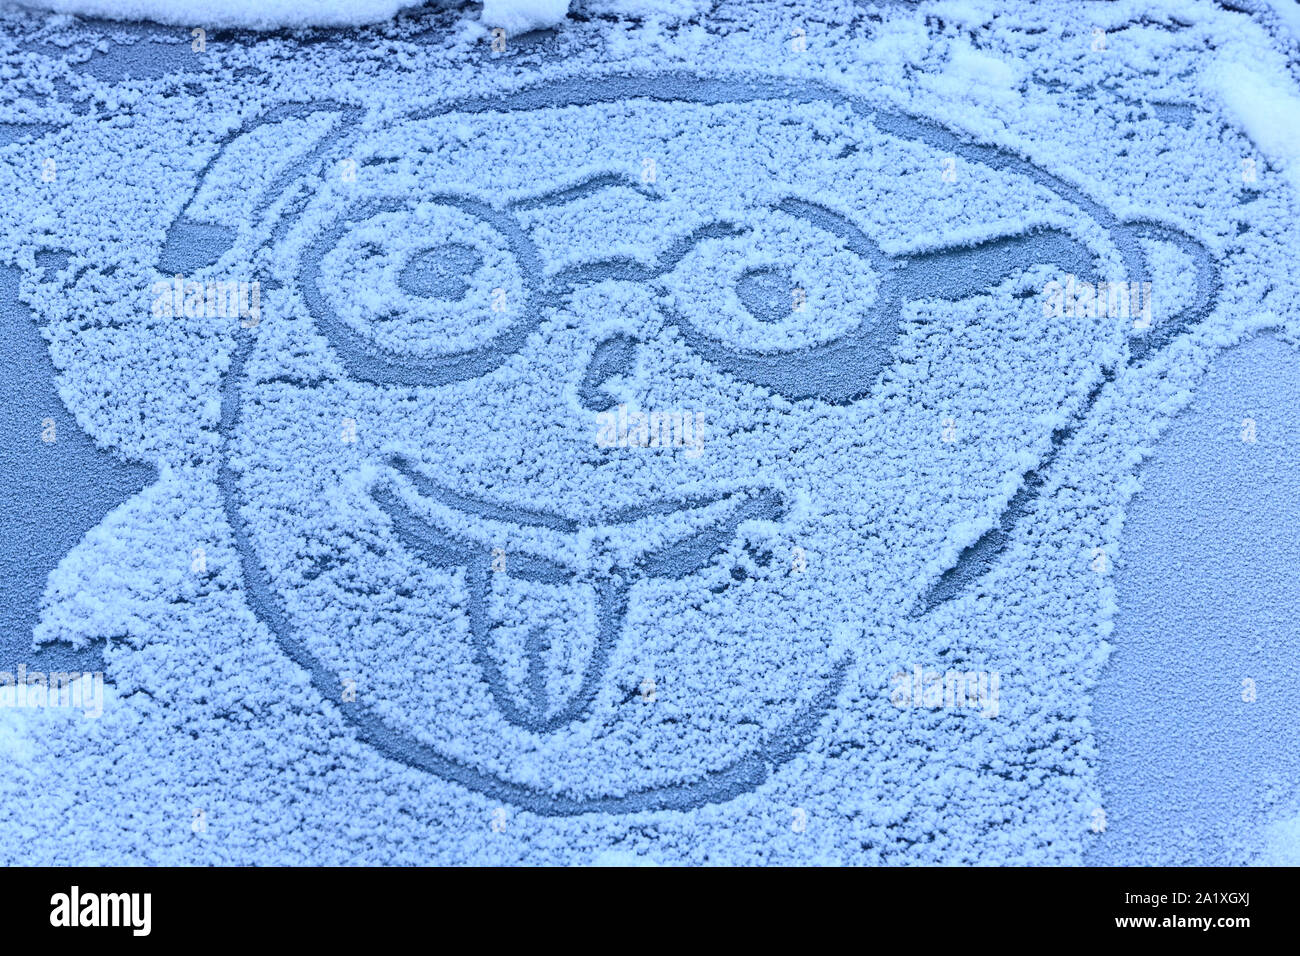 Illustration d'un personnage qui tyre la langue sur le pars-brise d'une voiture enneigée. Chamonix. Alta Savoia. Francia. Foto Stock